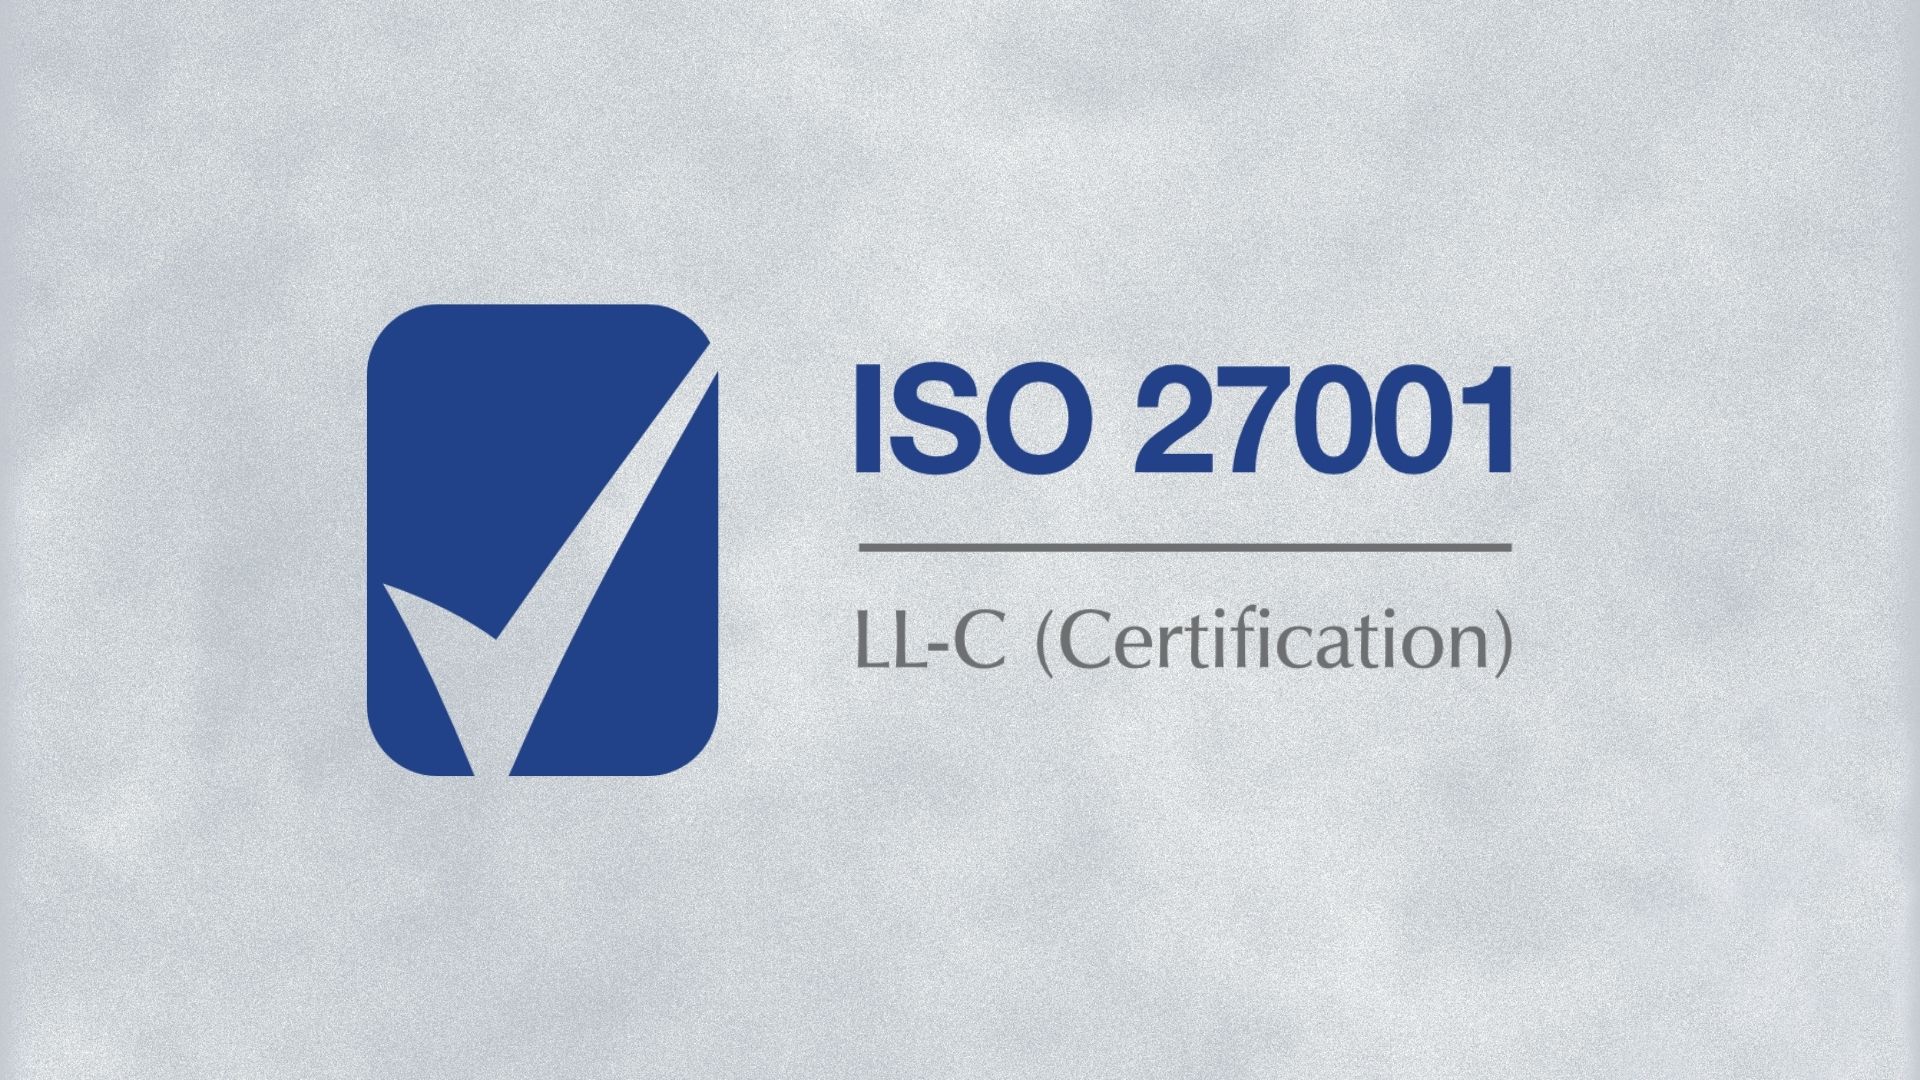 Certyfikat bezpieczeństwa ISO 27001 przyznany Questy